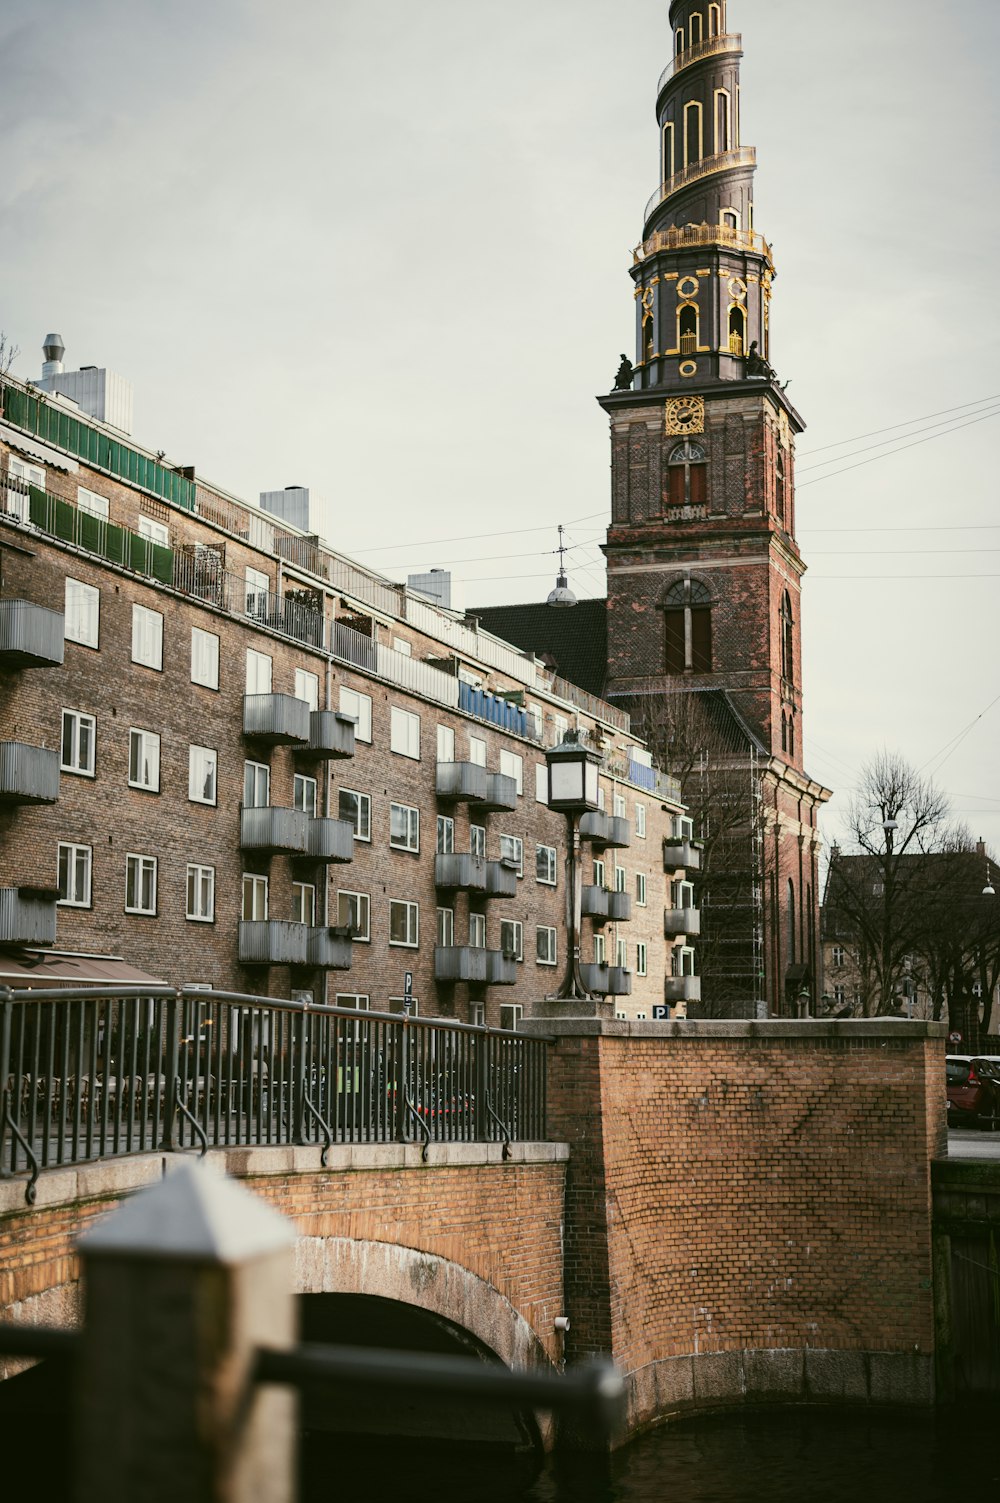 Un'alta torre dell'orologio che domina una città